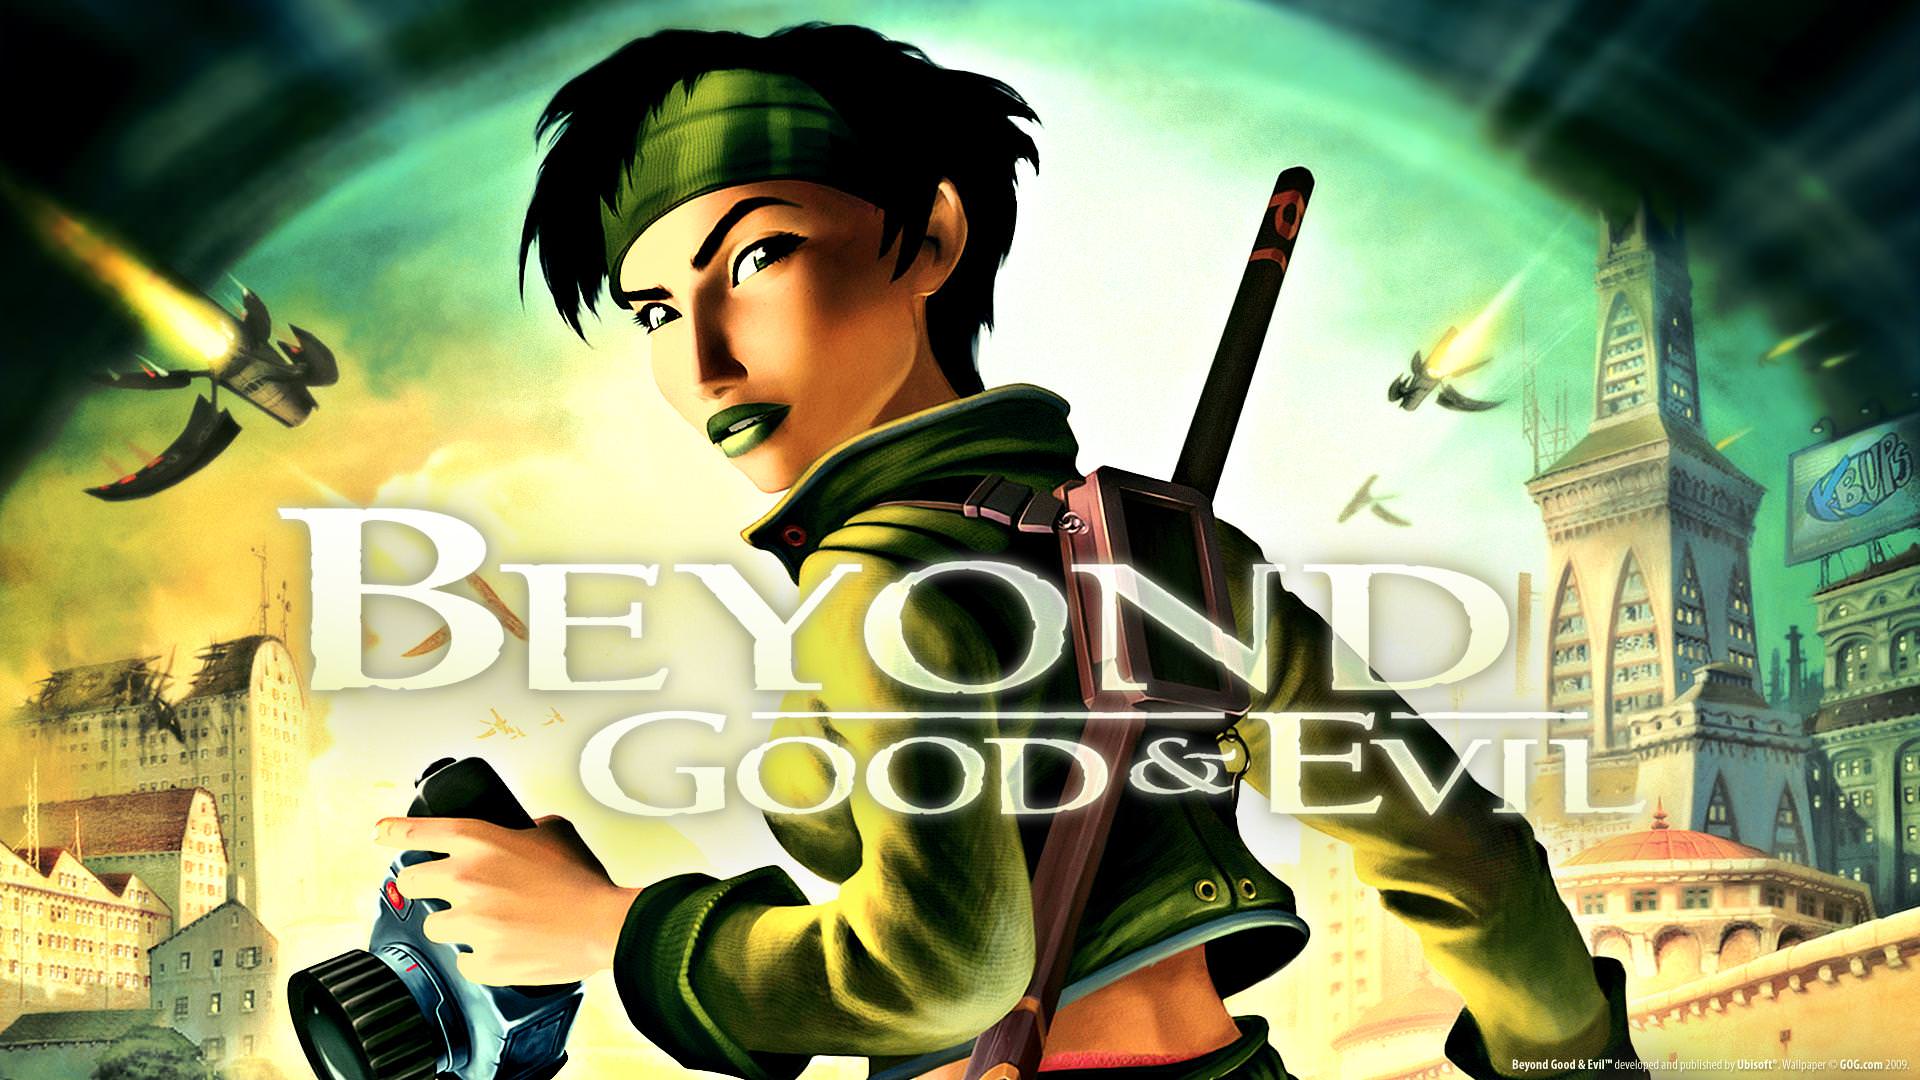 نسخه بیست سالگی بازی Beyond Good and Evil لیست شد